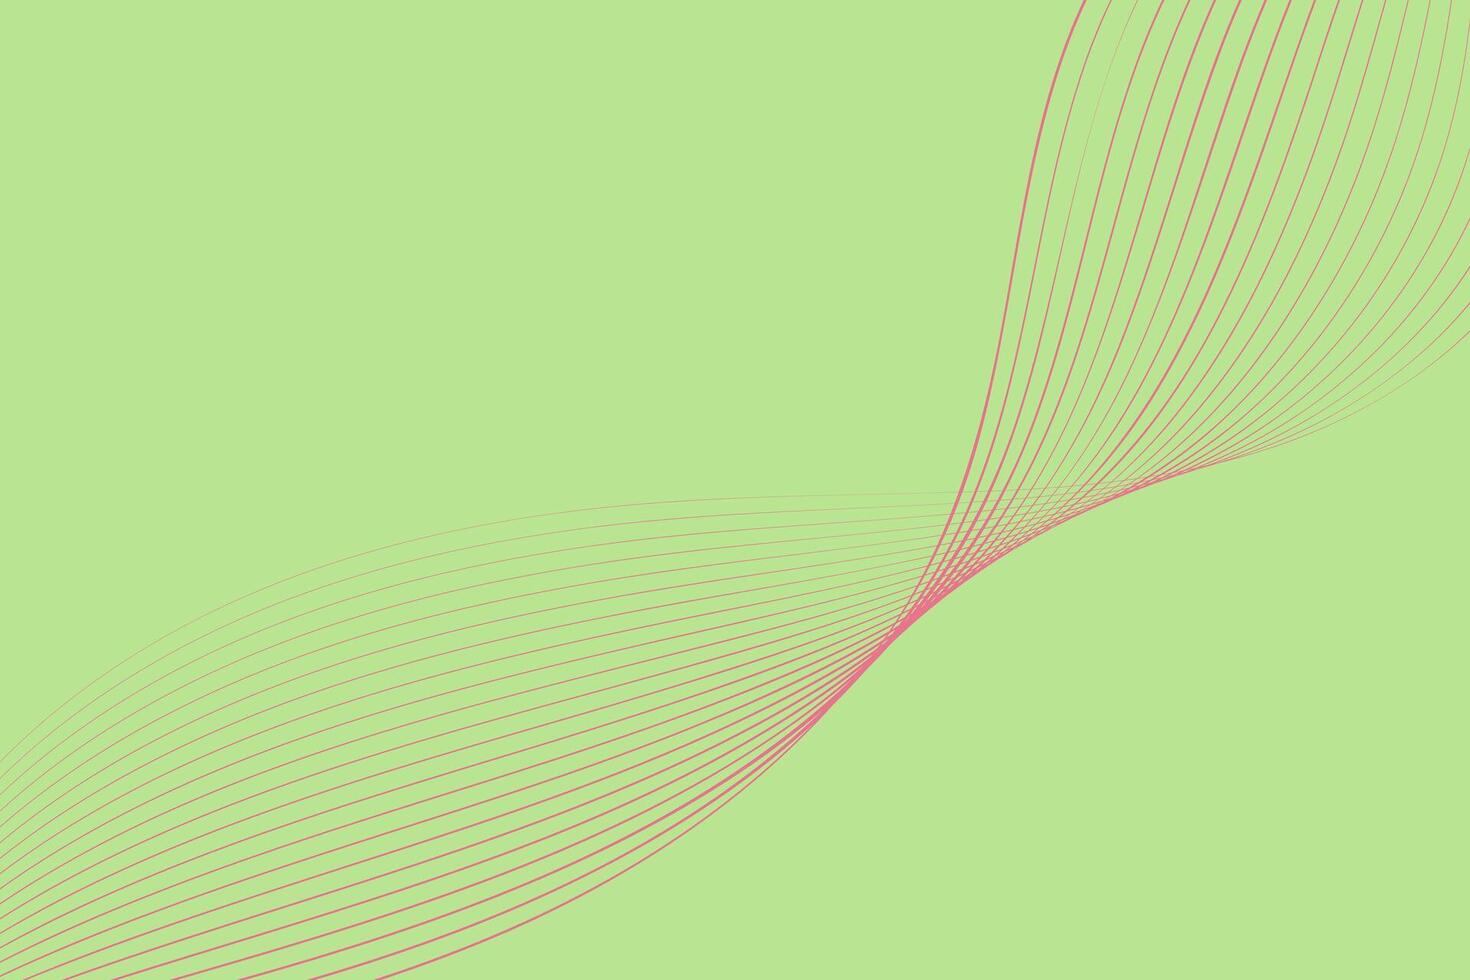 une vert Contexte avec une distinct rose ligne fonctionnement horizontalement à travers le milieu. le contraste entre le deux couleurs crée une frappant visuel impact. vecteur